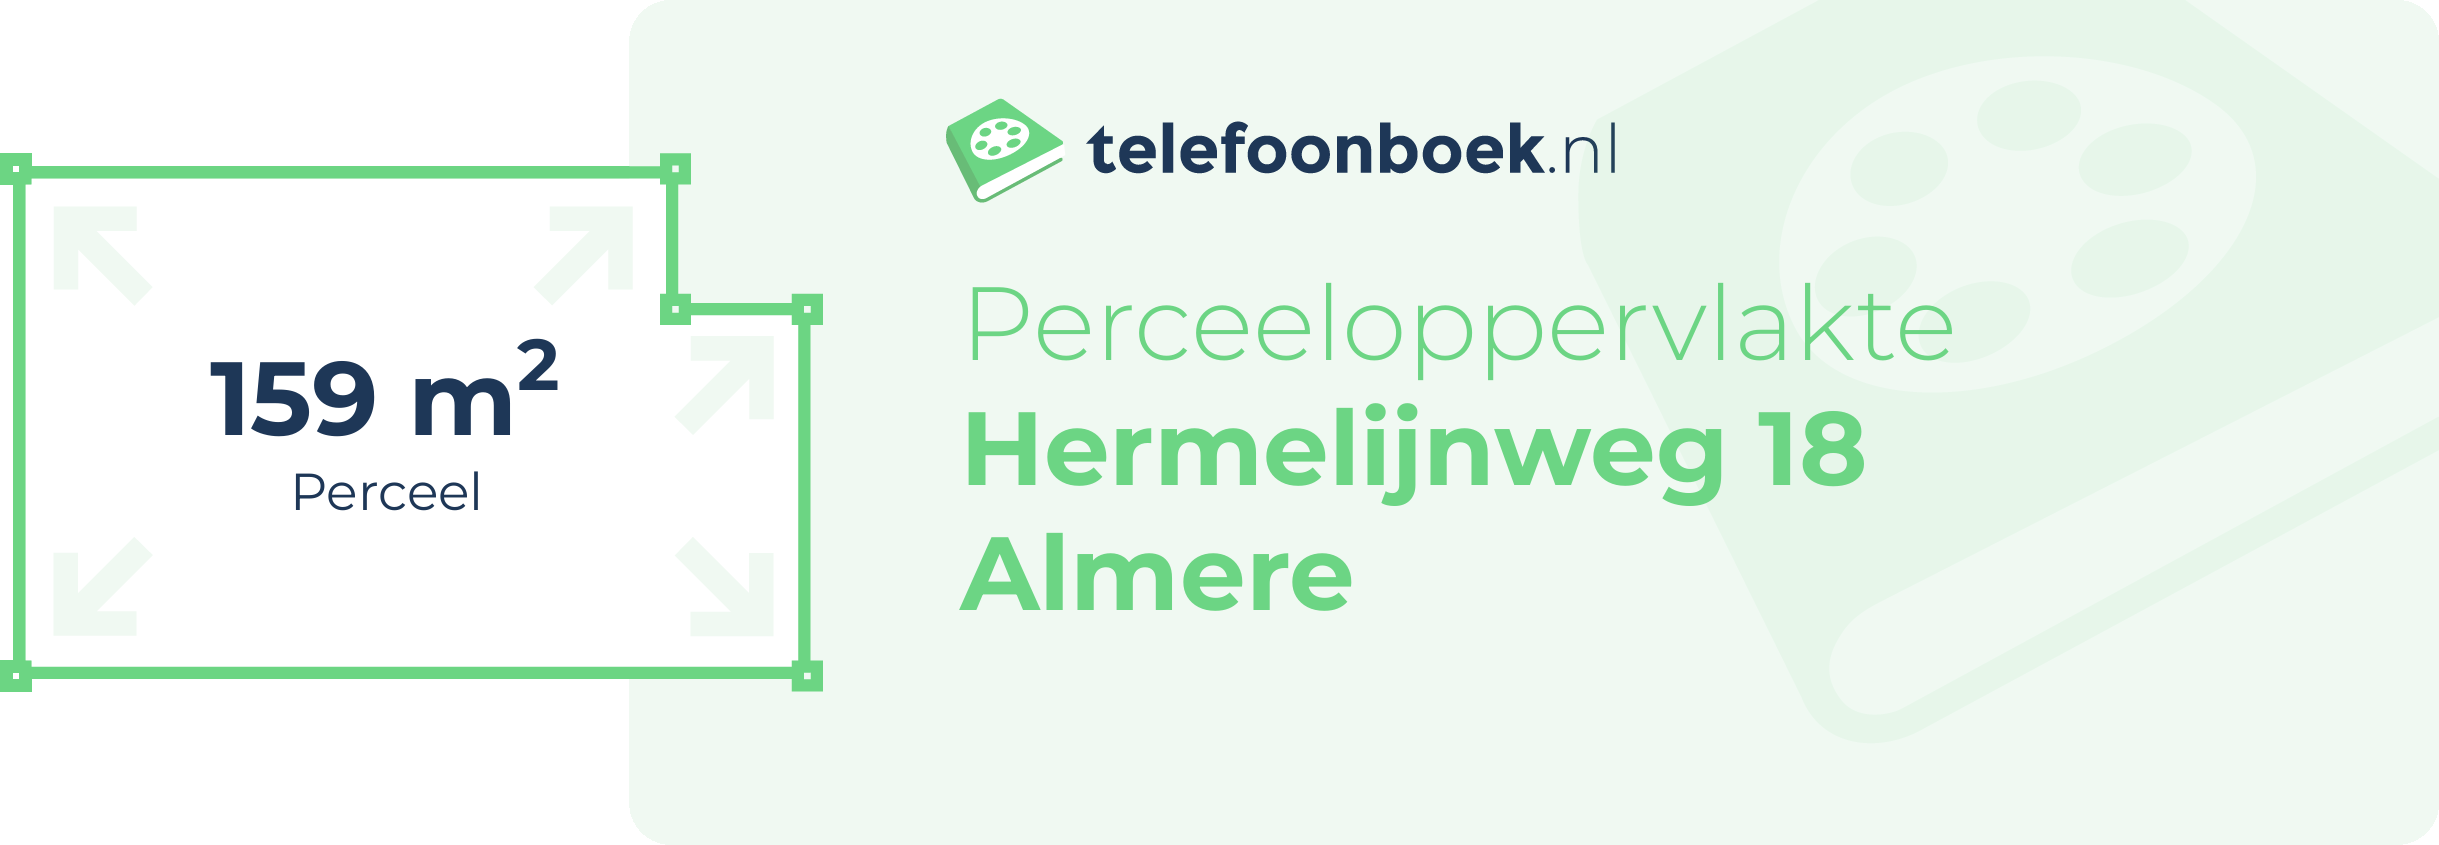 Perceeloppervlakte Hermelijnweg 18 Almere